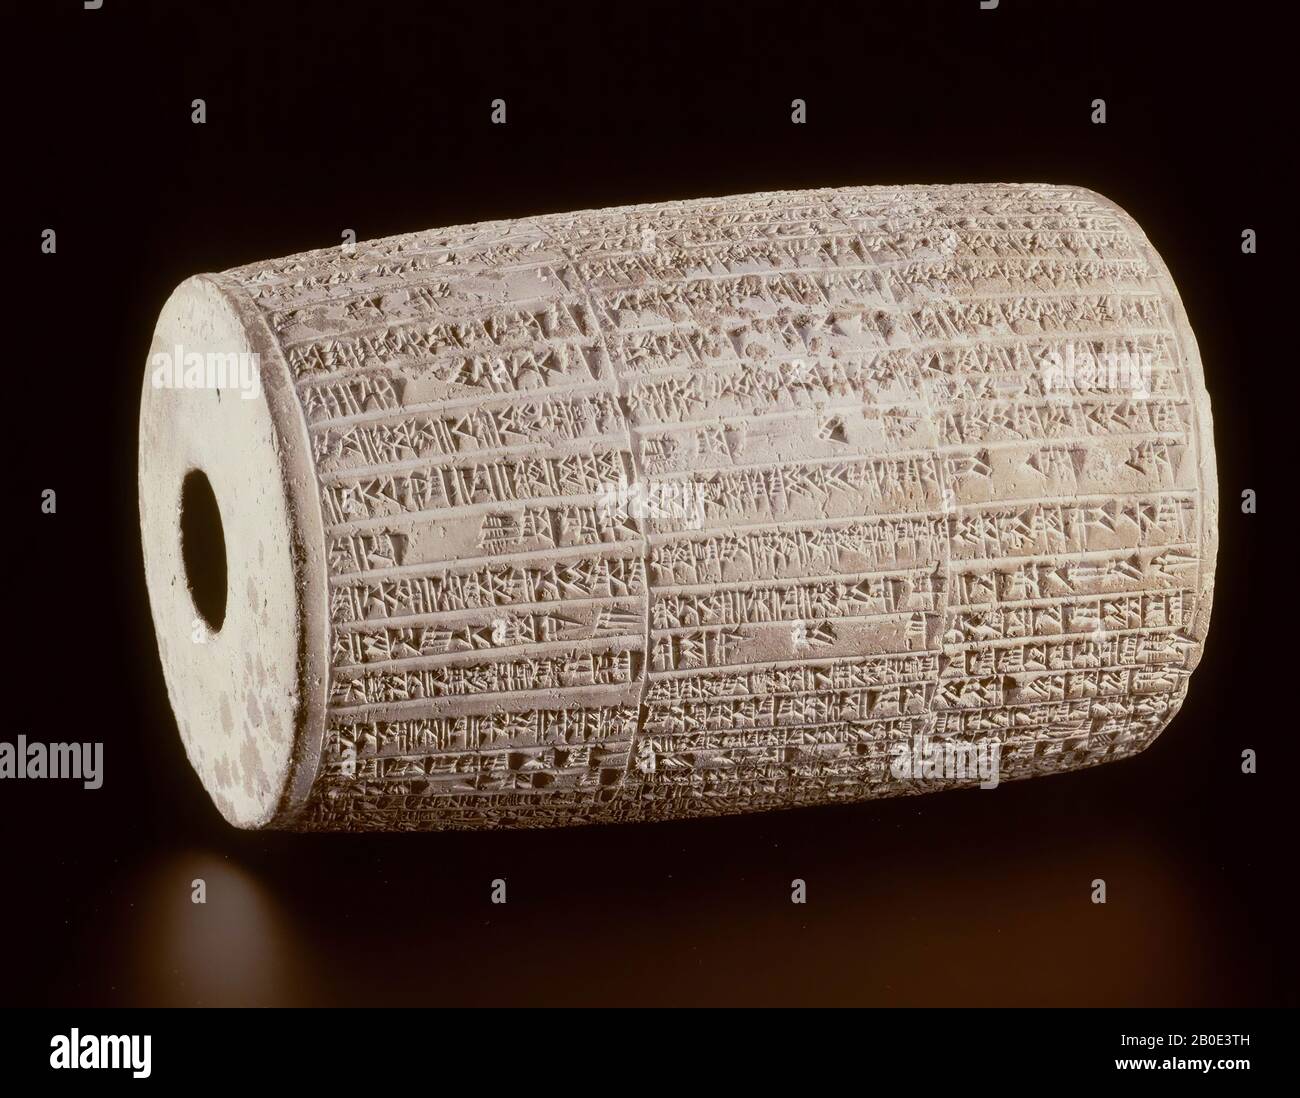 Il cilindro cavo reca un'iscrizione religiosa in cuneiforme scritta del grande re babilonese Nebukadnetsar II Trionfalmente, annuncia la costruzione del tempio dedicato a Lugal-Maradda, il dio principale dell'antica città di Marad in Babylonia. Questo cilindro fu sepolto nella fondazione del tempio di Marad. Non è chiaro perché questa iscrizione sia stata scelta per la forma di un cilindro., Cilindro, iscrizione, ceramica, D 22 cm, periodo neobabilonese 605-562 a.C., Iraq Foto Stock